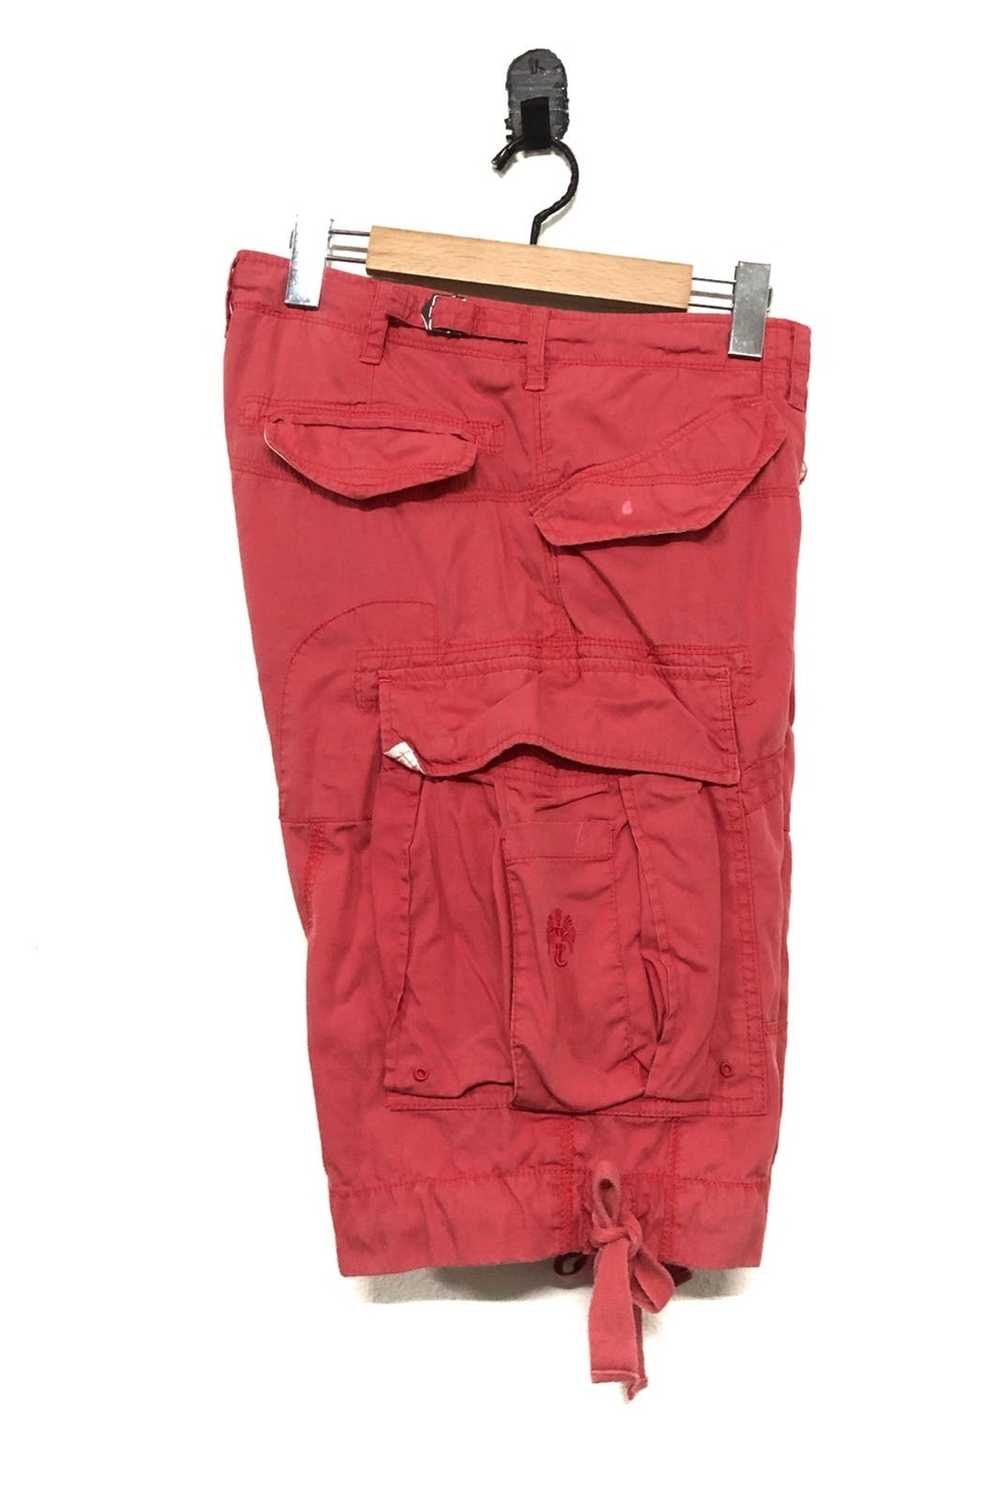 Japanese Brand Ganesh Cargo Shorts pant - image 3